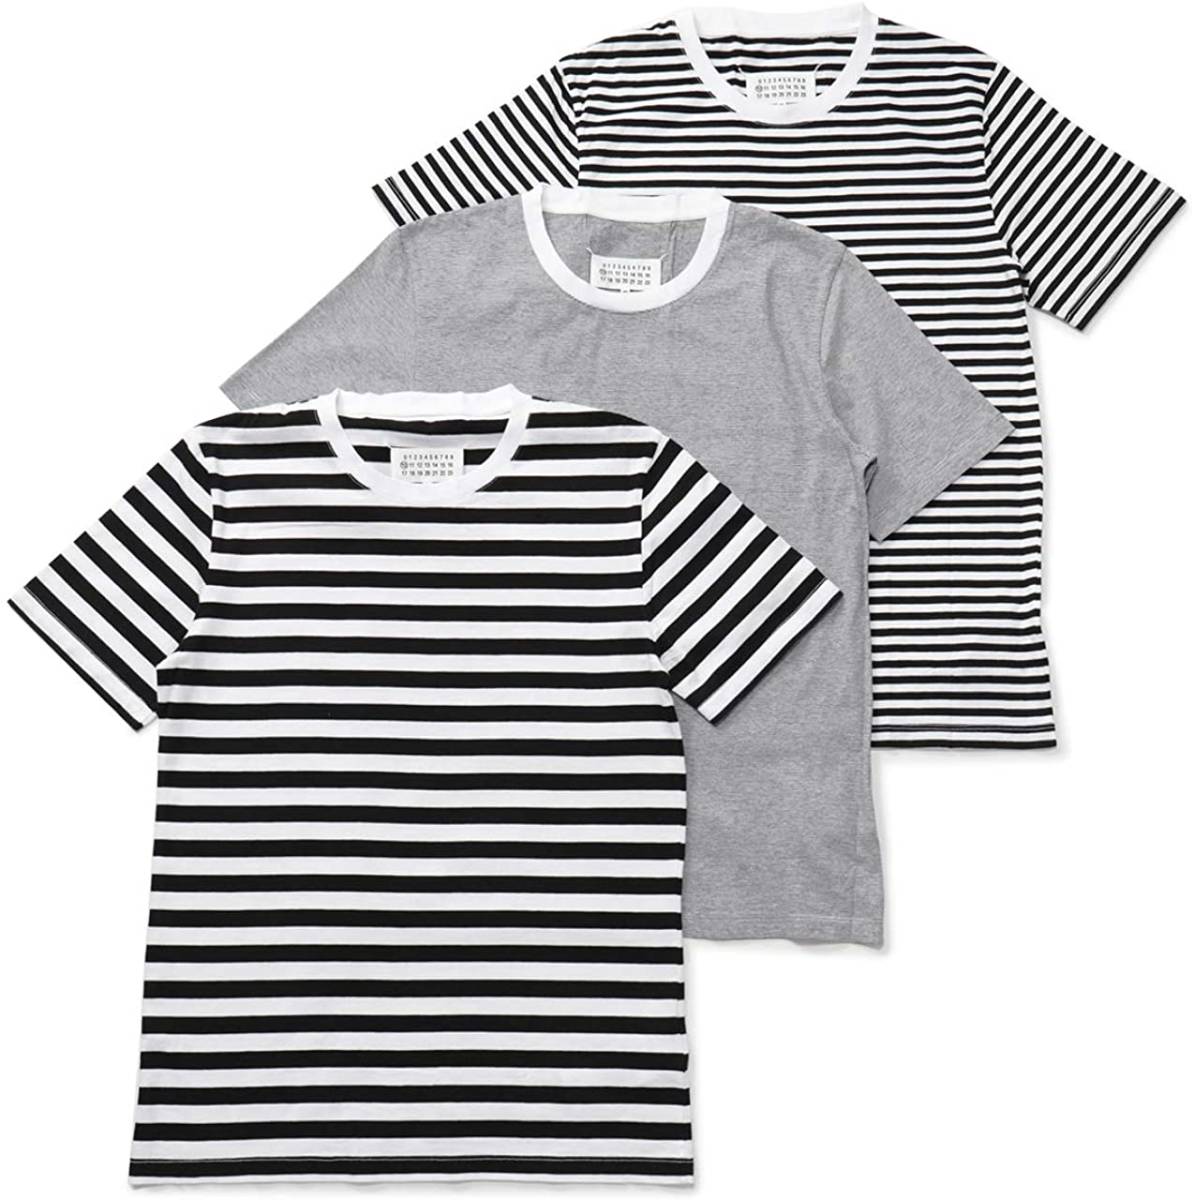 L 新品 メゾンマルジェラ ボーダー 白黒 パックT ステレオタイプ 3パック Tシャツ STEREOTYPE 3PACK 3枚 セット MaisonMargiela パック 黒_画像5